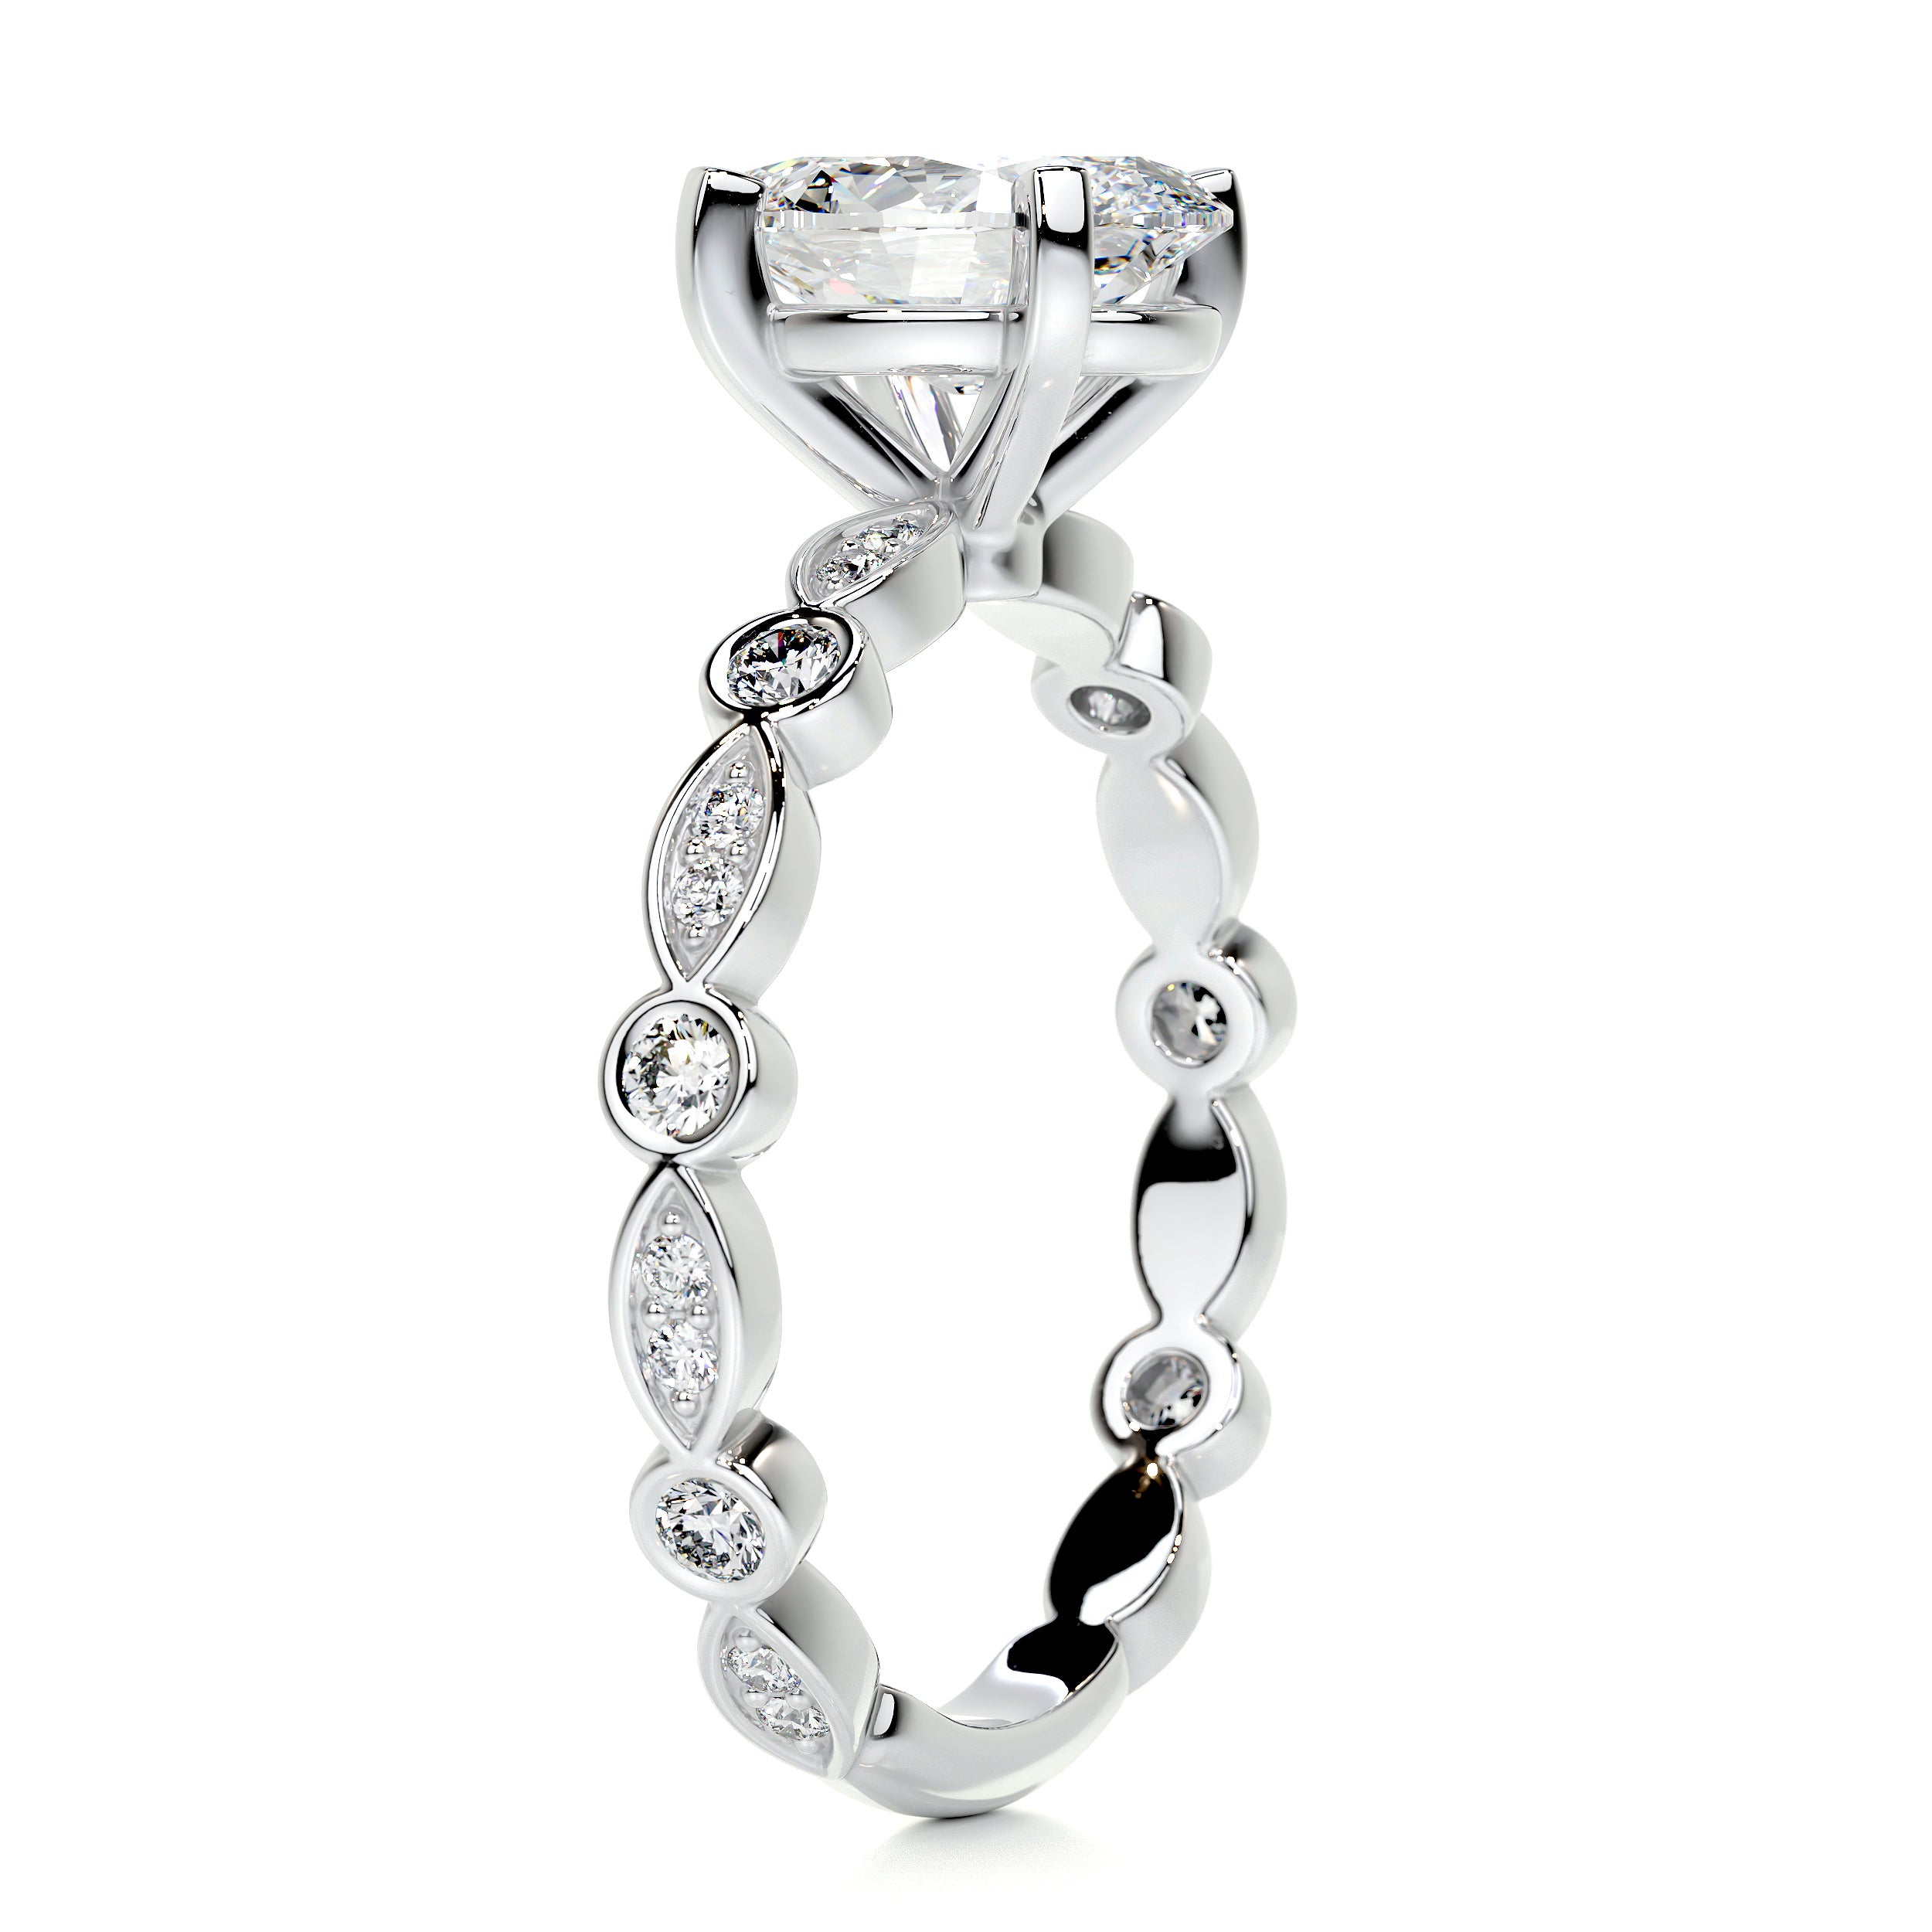 Amelia Diamond Engagement Ring   (2.5 Carat) -Platinum